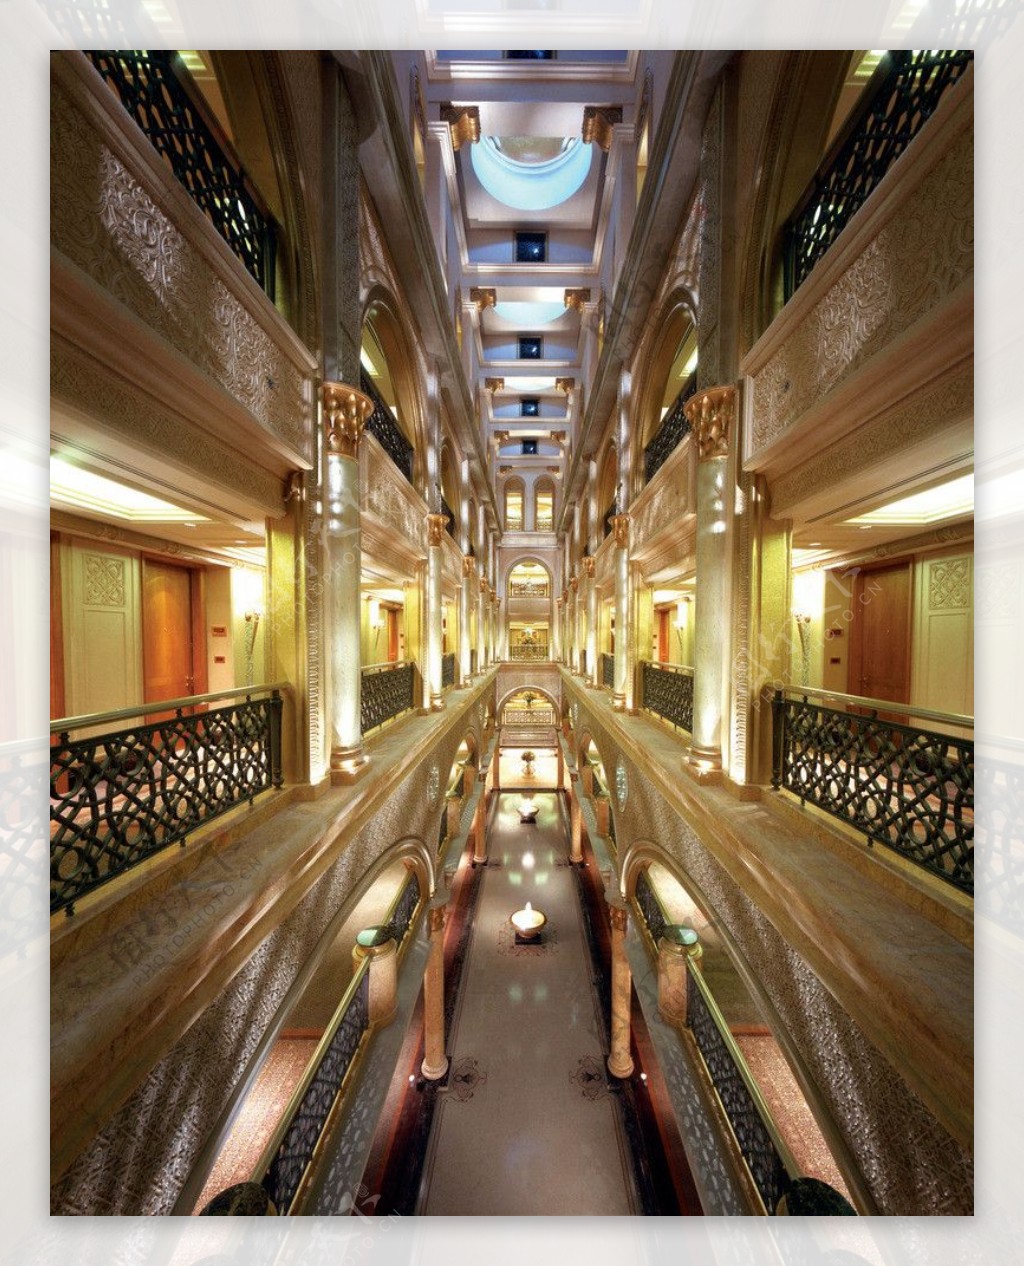 酋长国宫殿酒店走廊图片